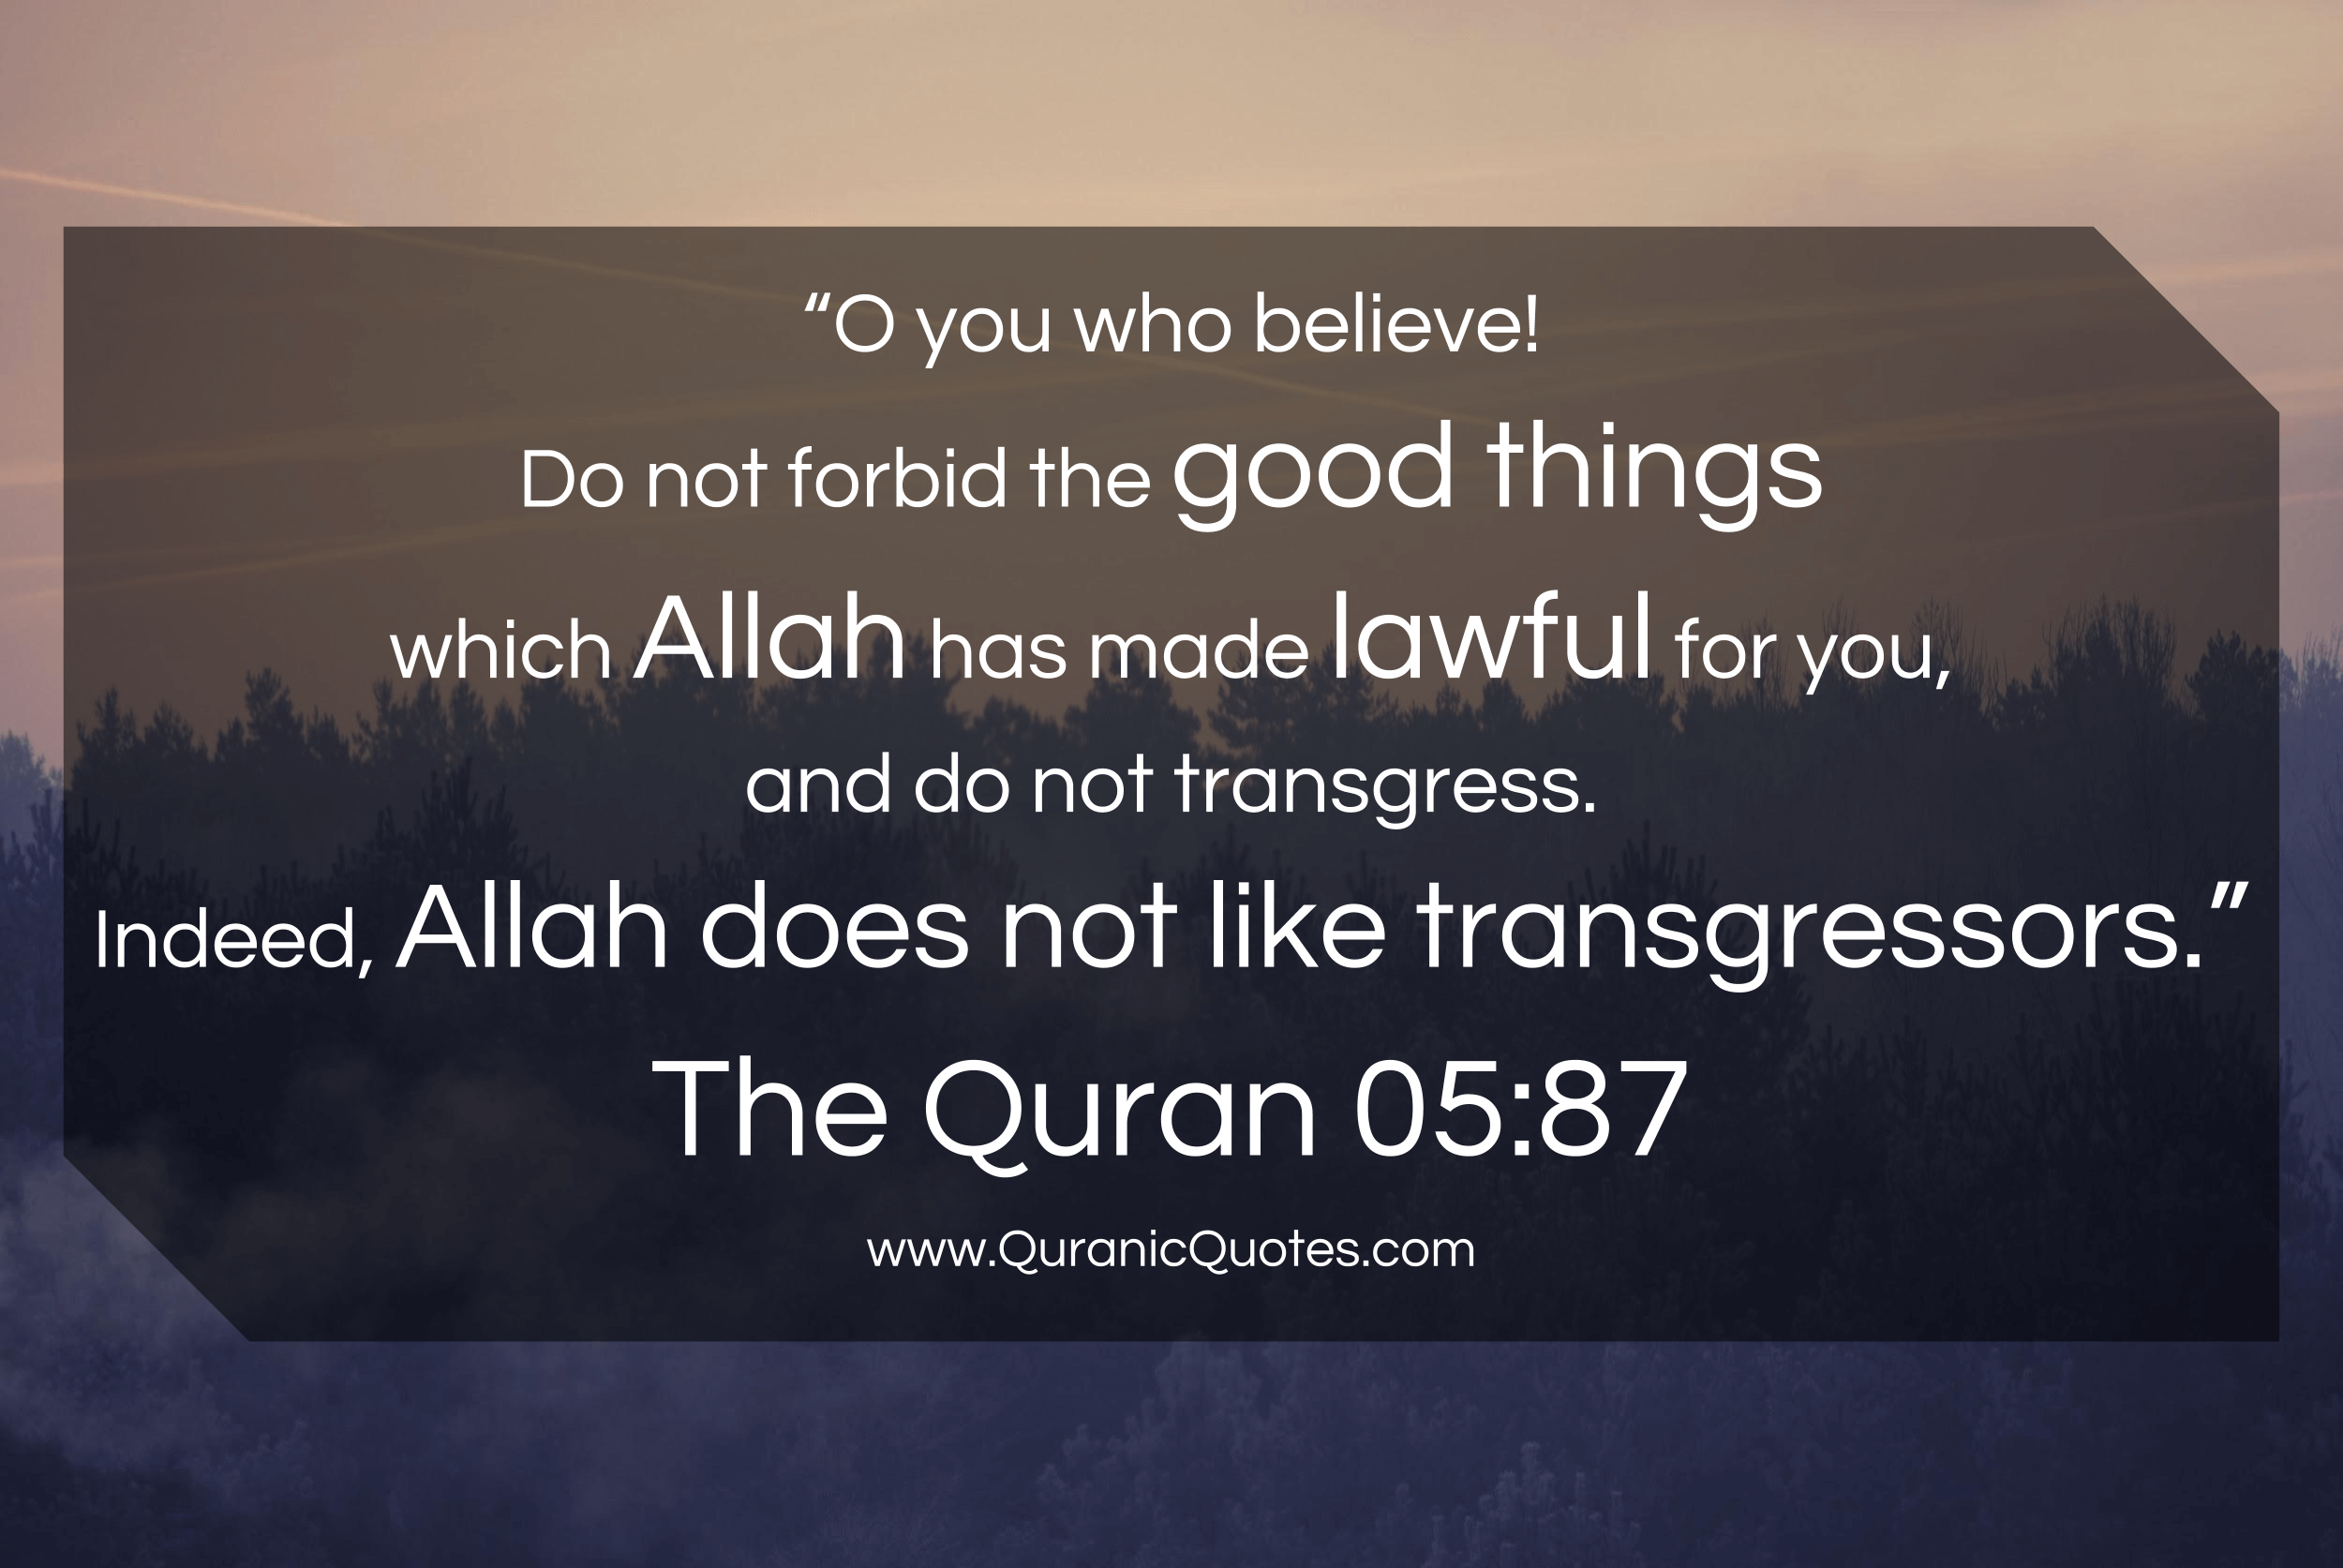 Quranic Quotes #188